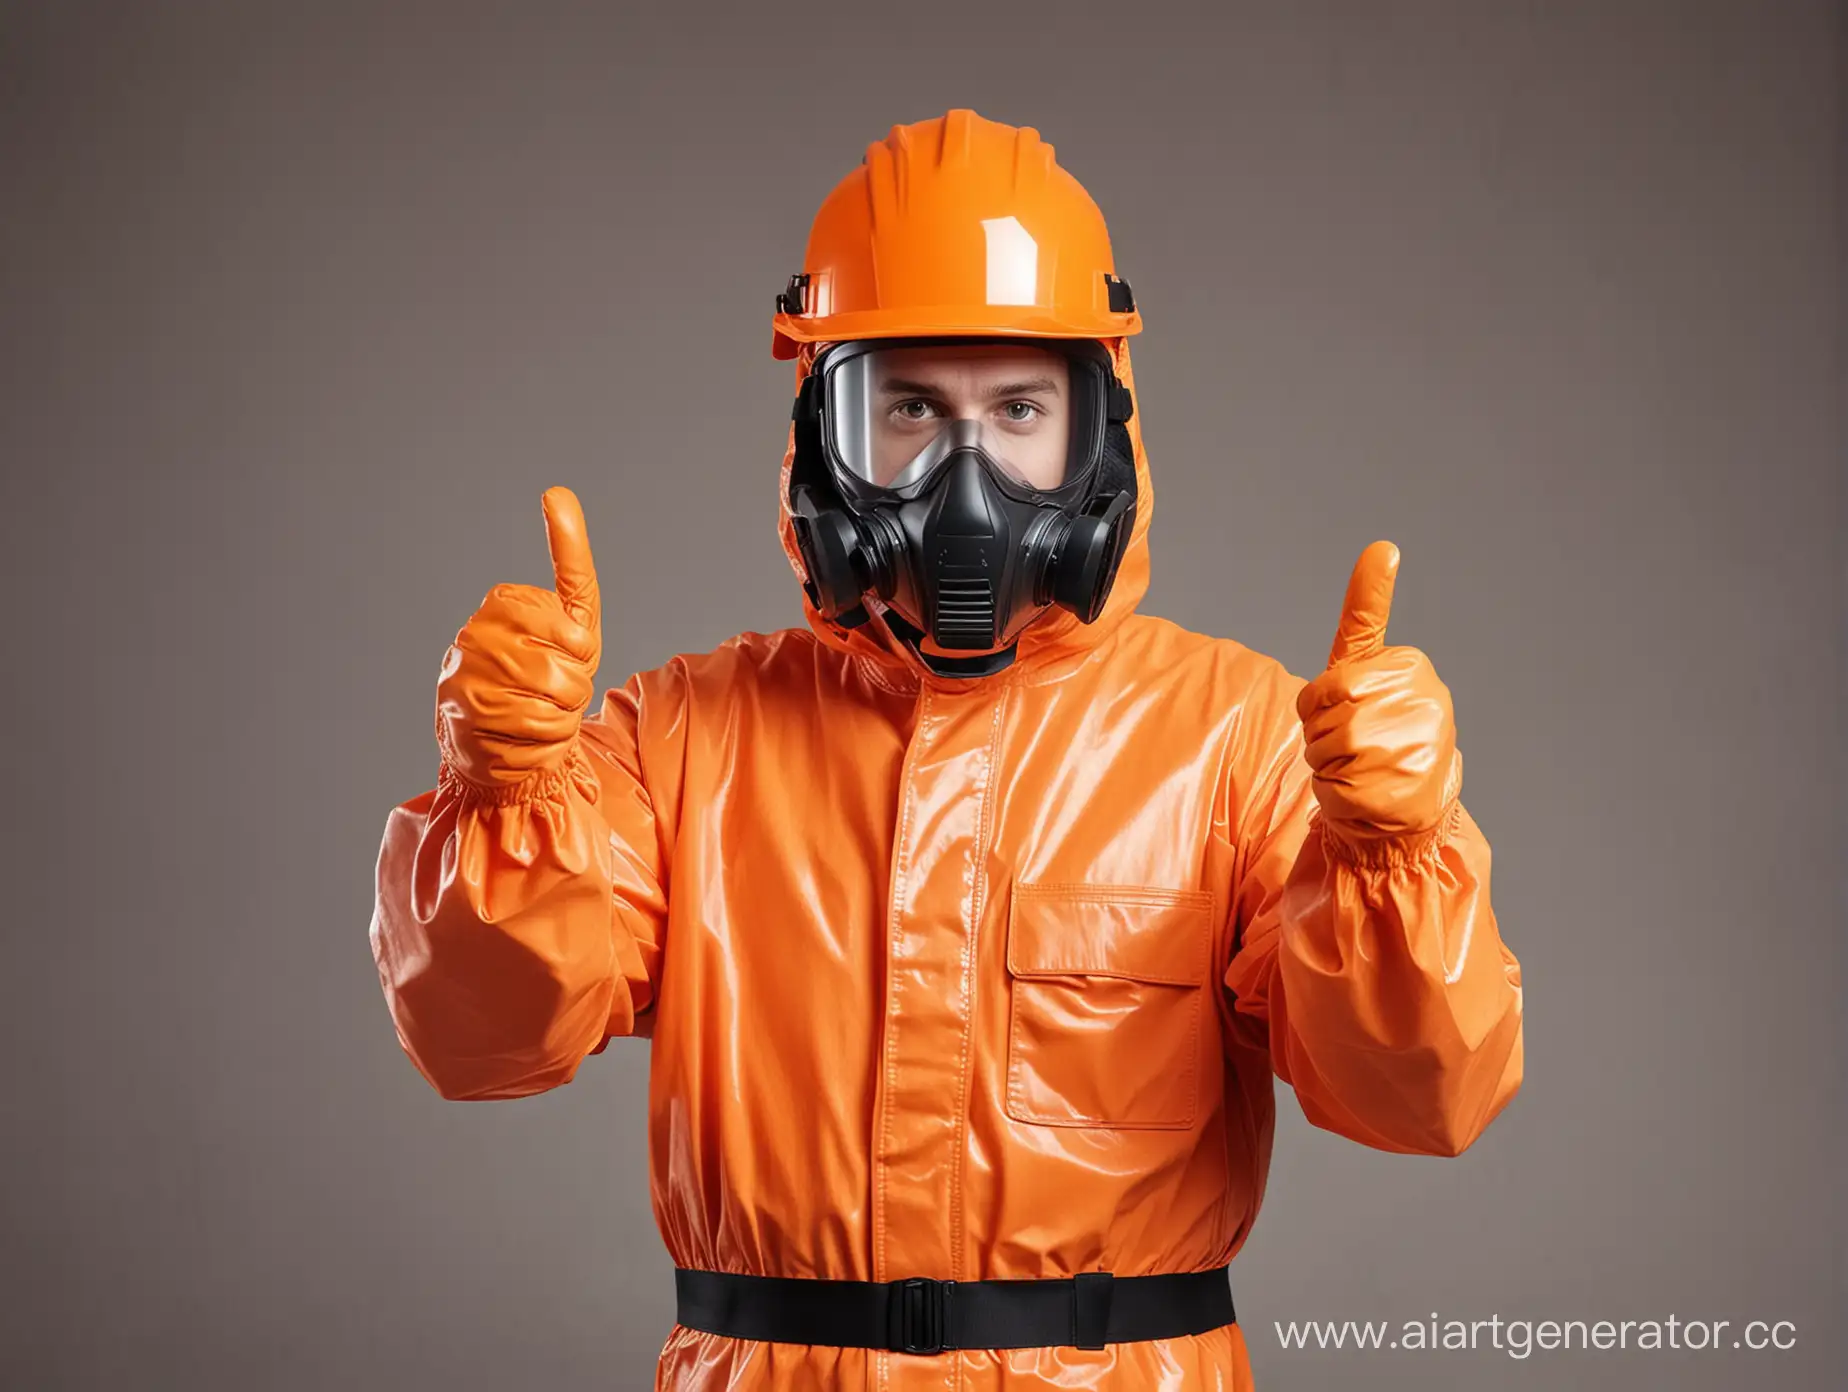 Hazmat-Suit-Worker-Giving-Thumbs-Up-in-Orange-Helmet-with-Visor